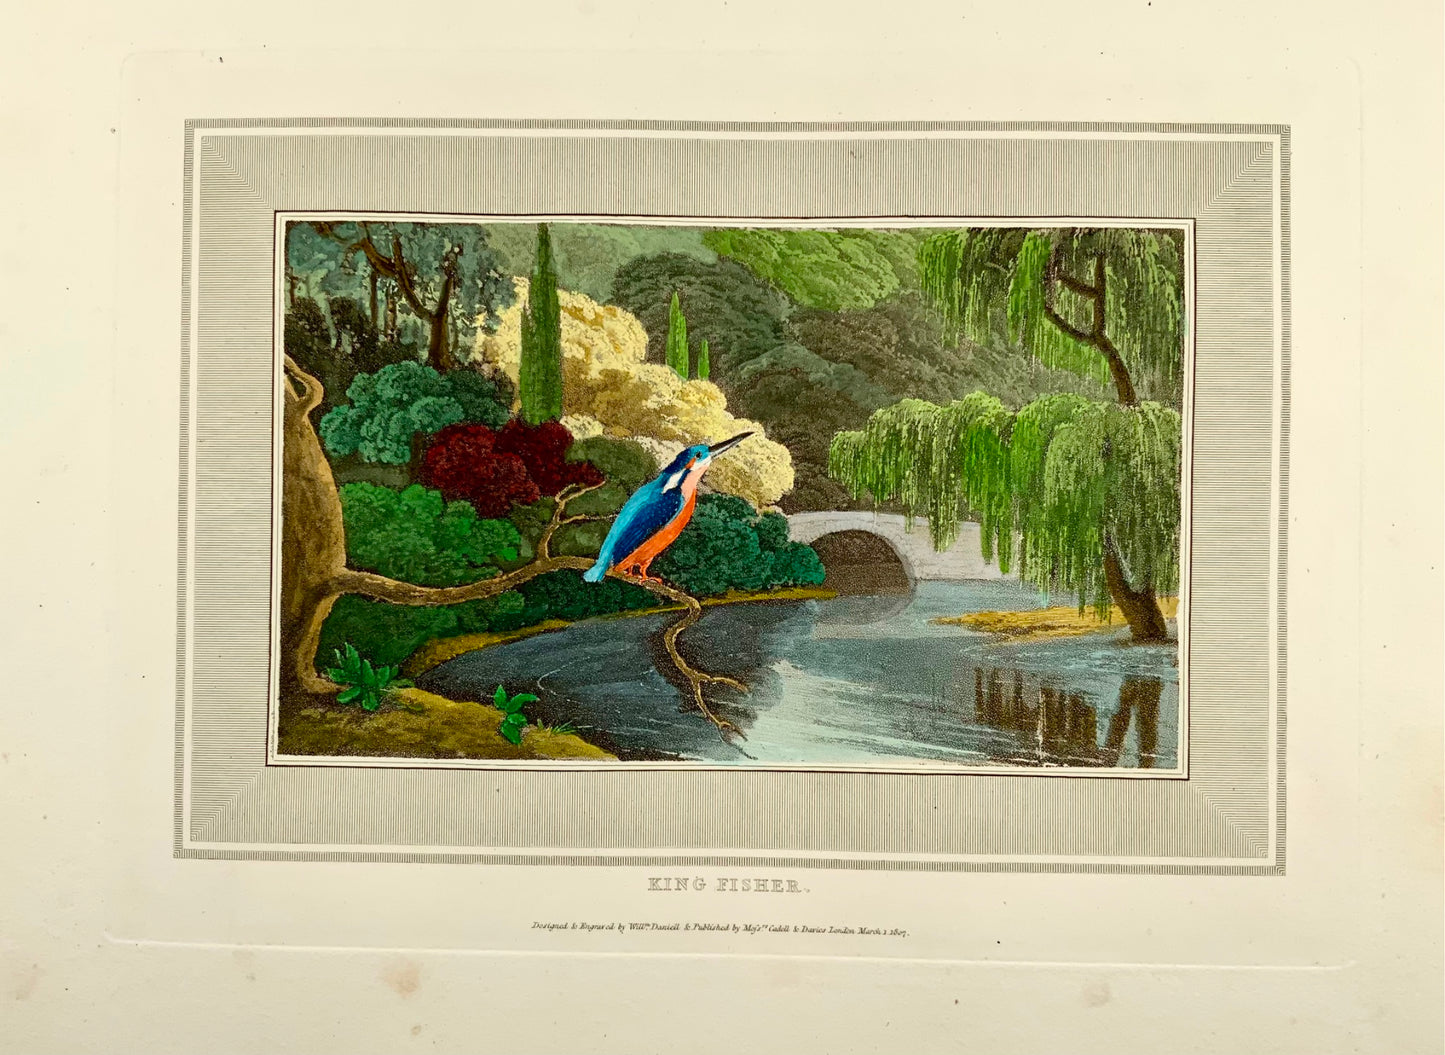 1807 William Daniell, Martin pescatore, ornitologia, acquatinta colorata a mano